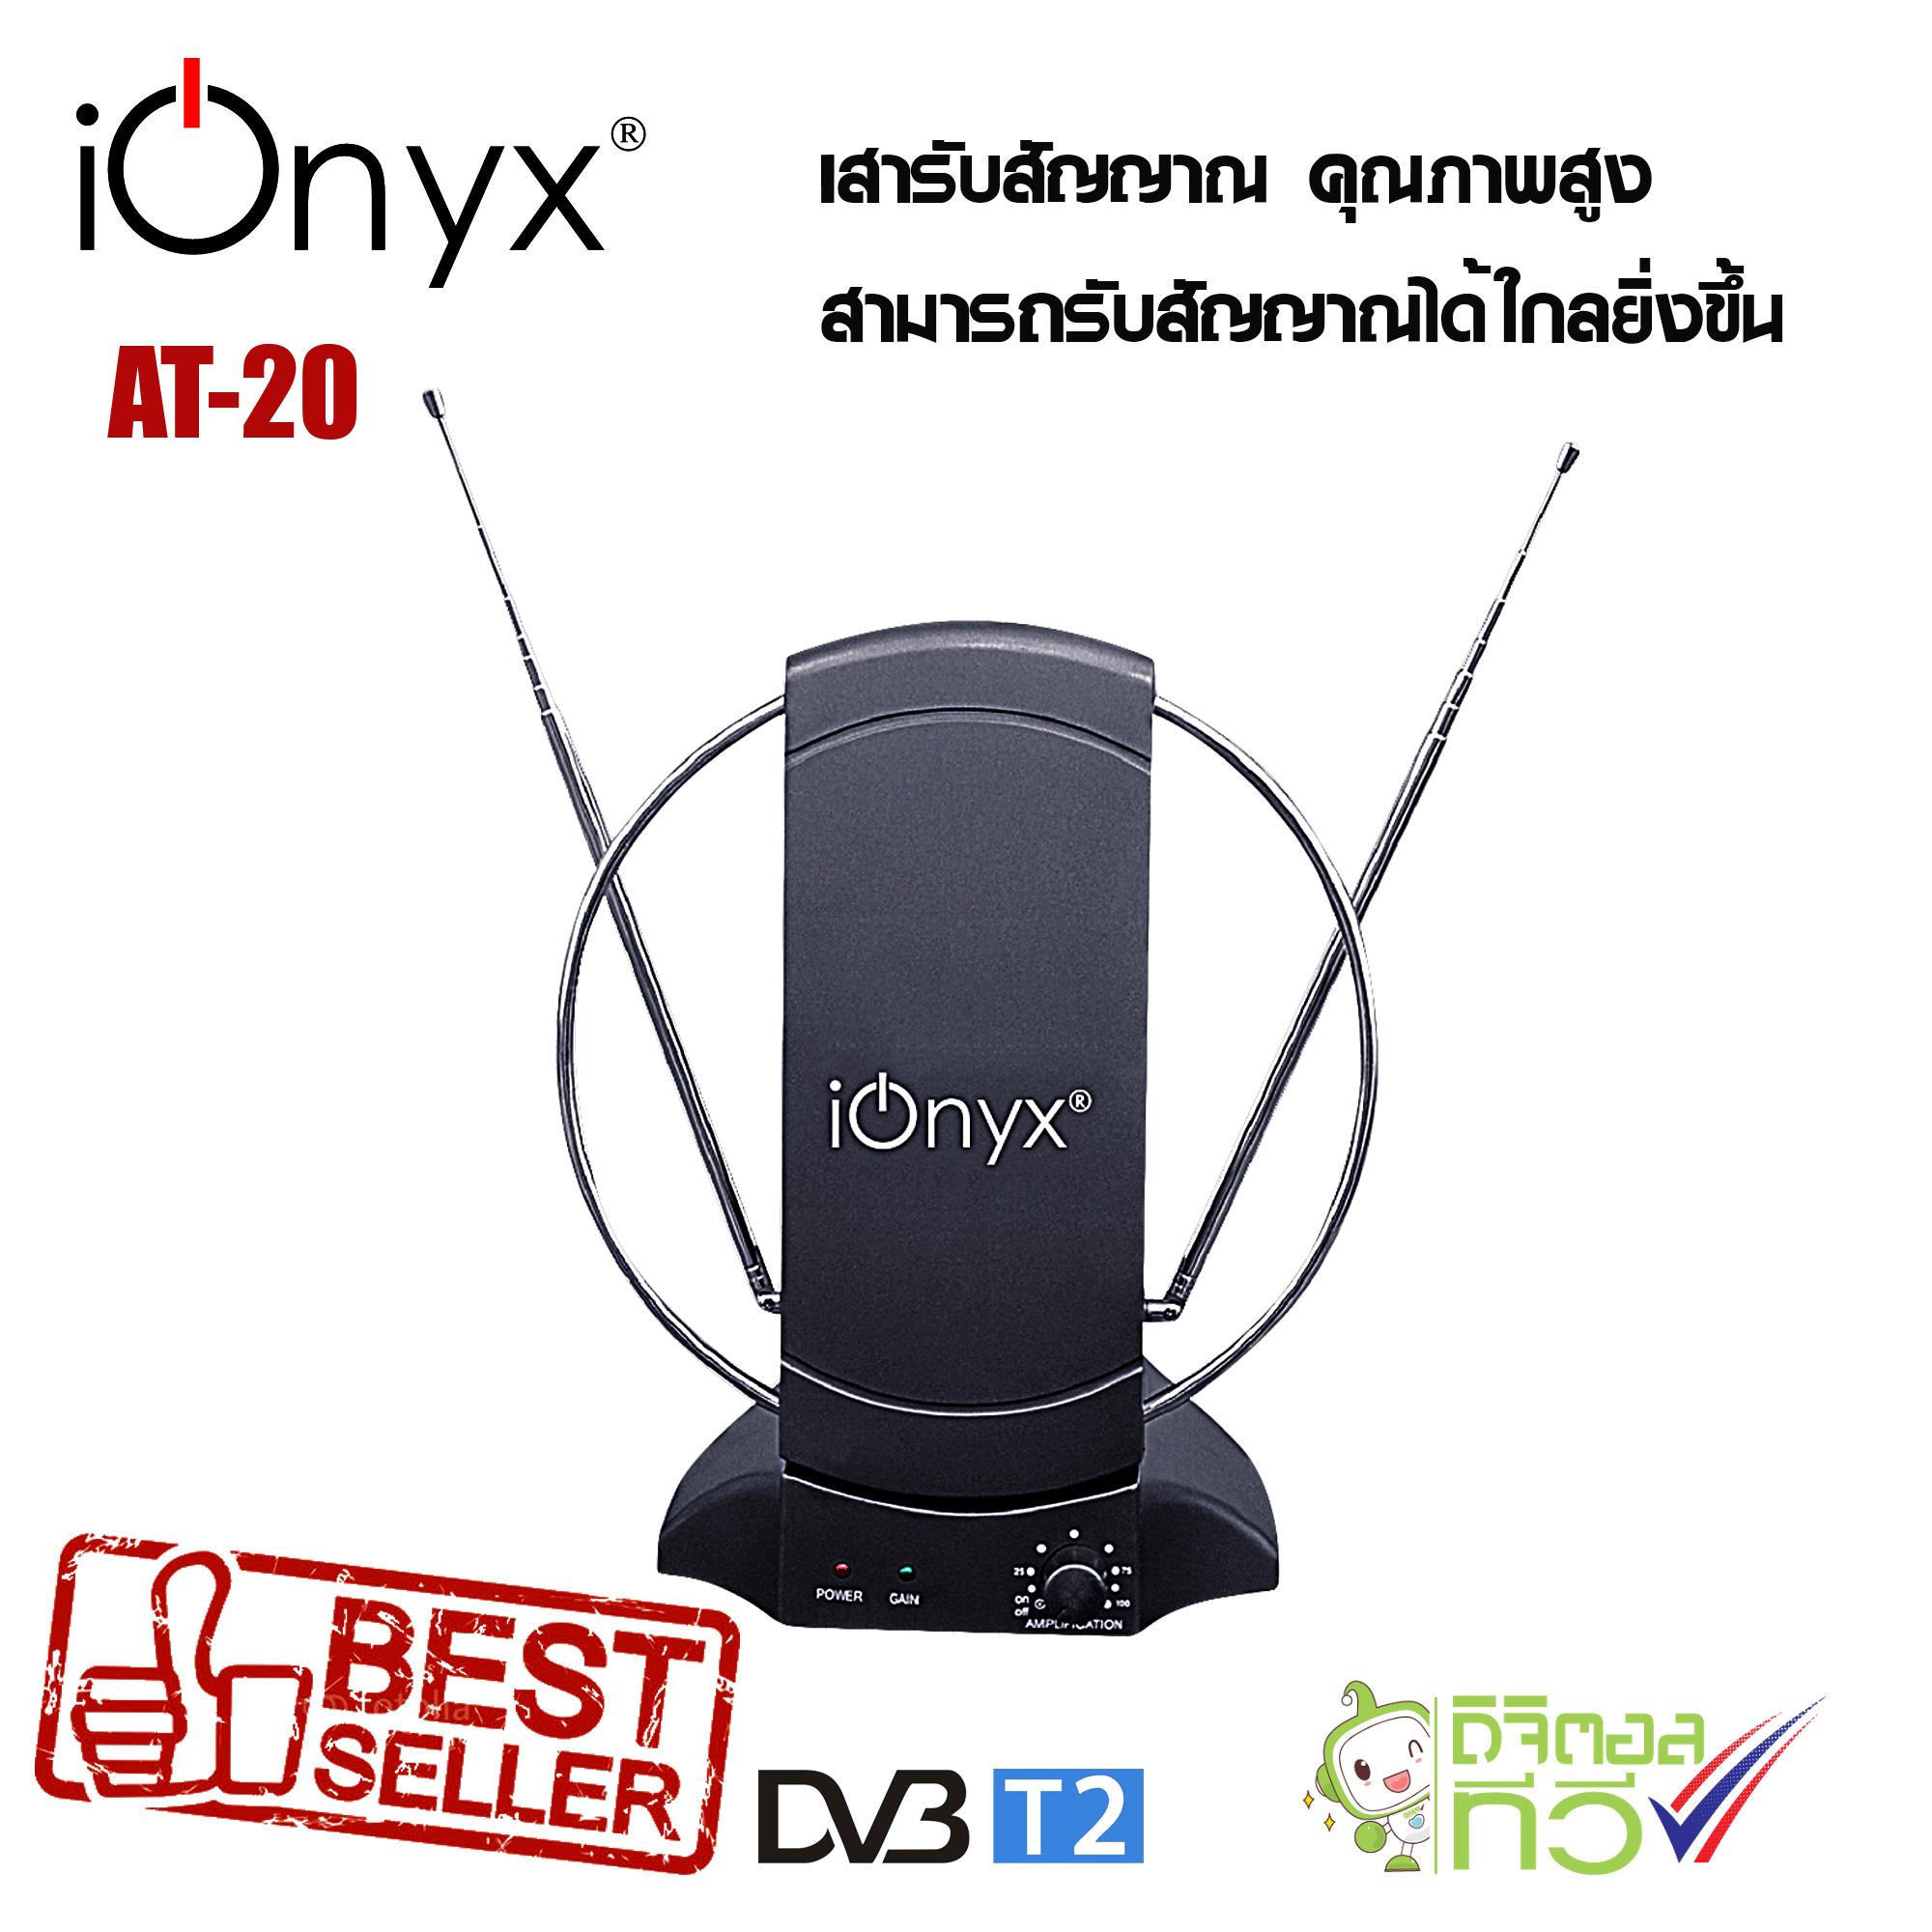 ionyx AT-20 เสาอากาศภายในสำหรับ ดิจิตอลทีวี แบบสำเร็จรูป มีไฟเลี้ยง ช่วยให้รับสัญญาณได้ดีขึ้น